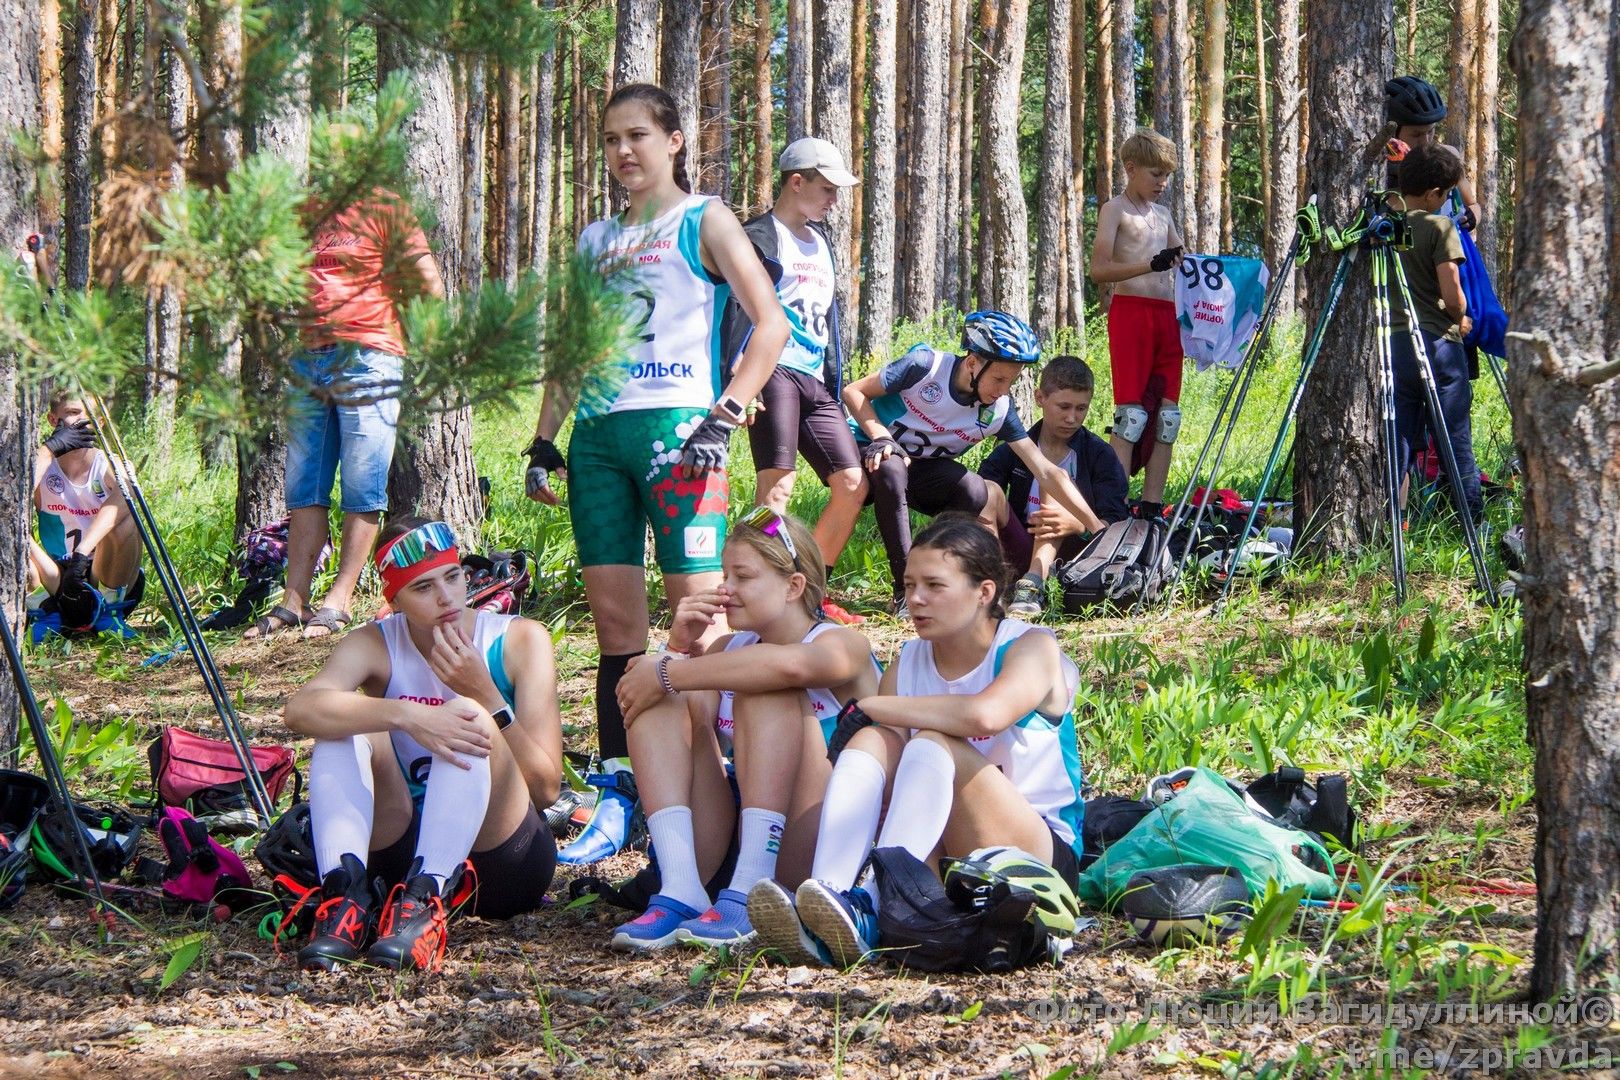 СК «Маяк». Открытый чемпионат Зеленодольска по лыжероллерам